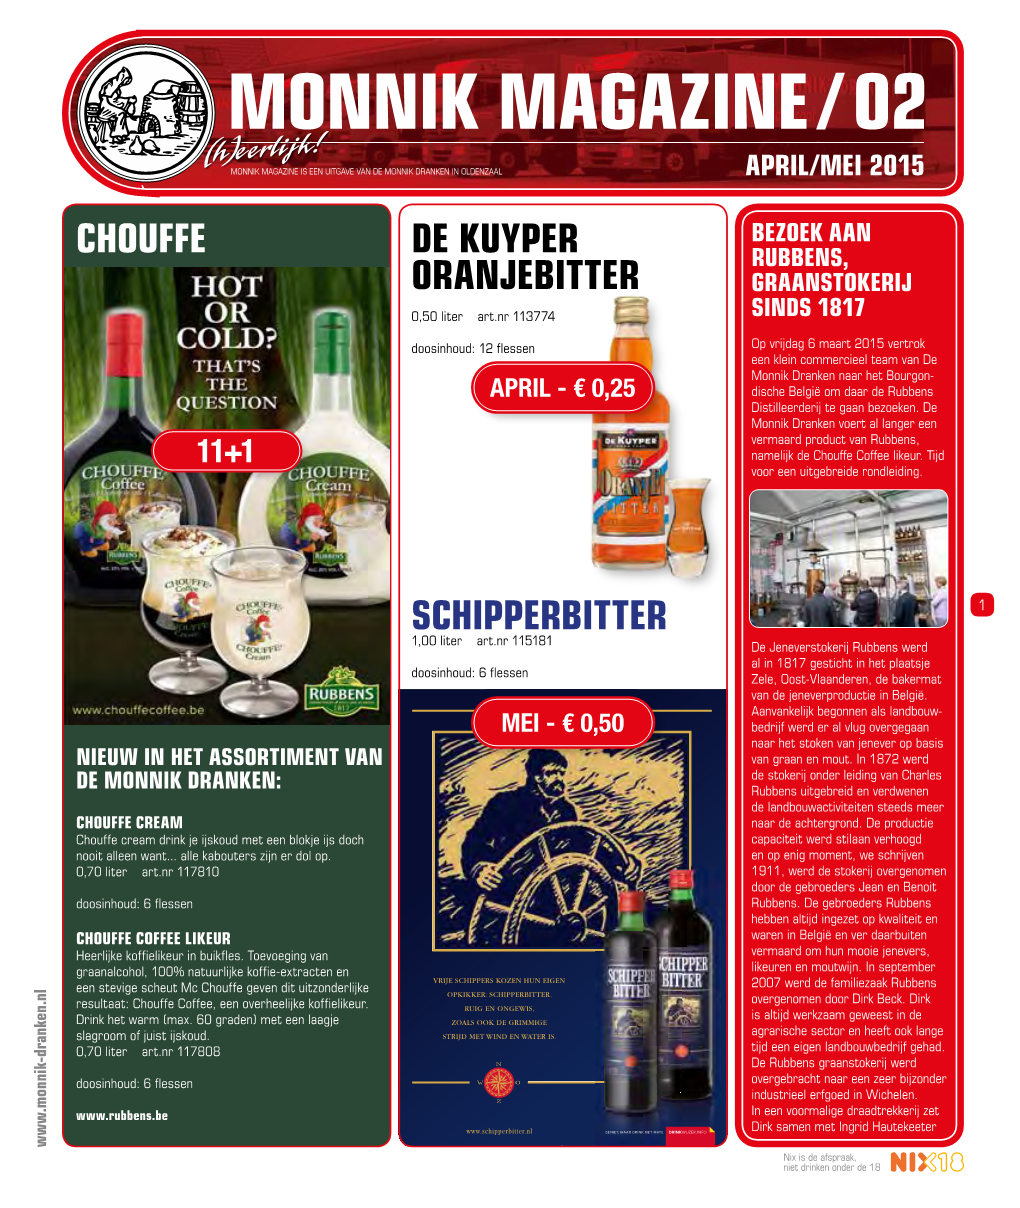 MONNIK MAGAZINE / 02 (H)Eerlijk! MONNIK MAGAZINE IS EEN UITGAVE VAN DE MONNIK DRANKEN in OLDENZAAL APRIL/MEI 2015